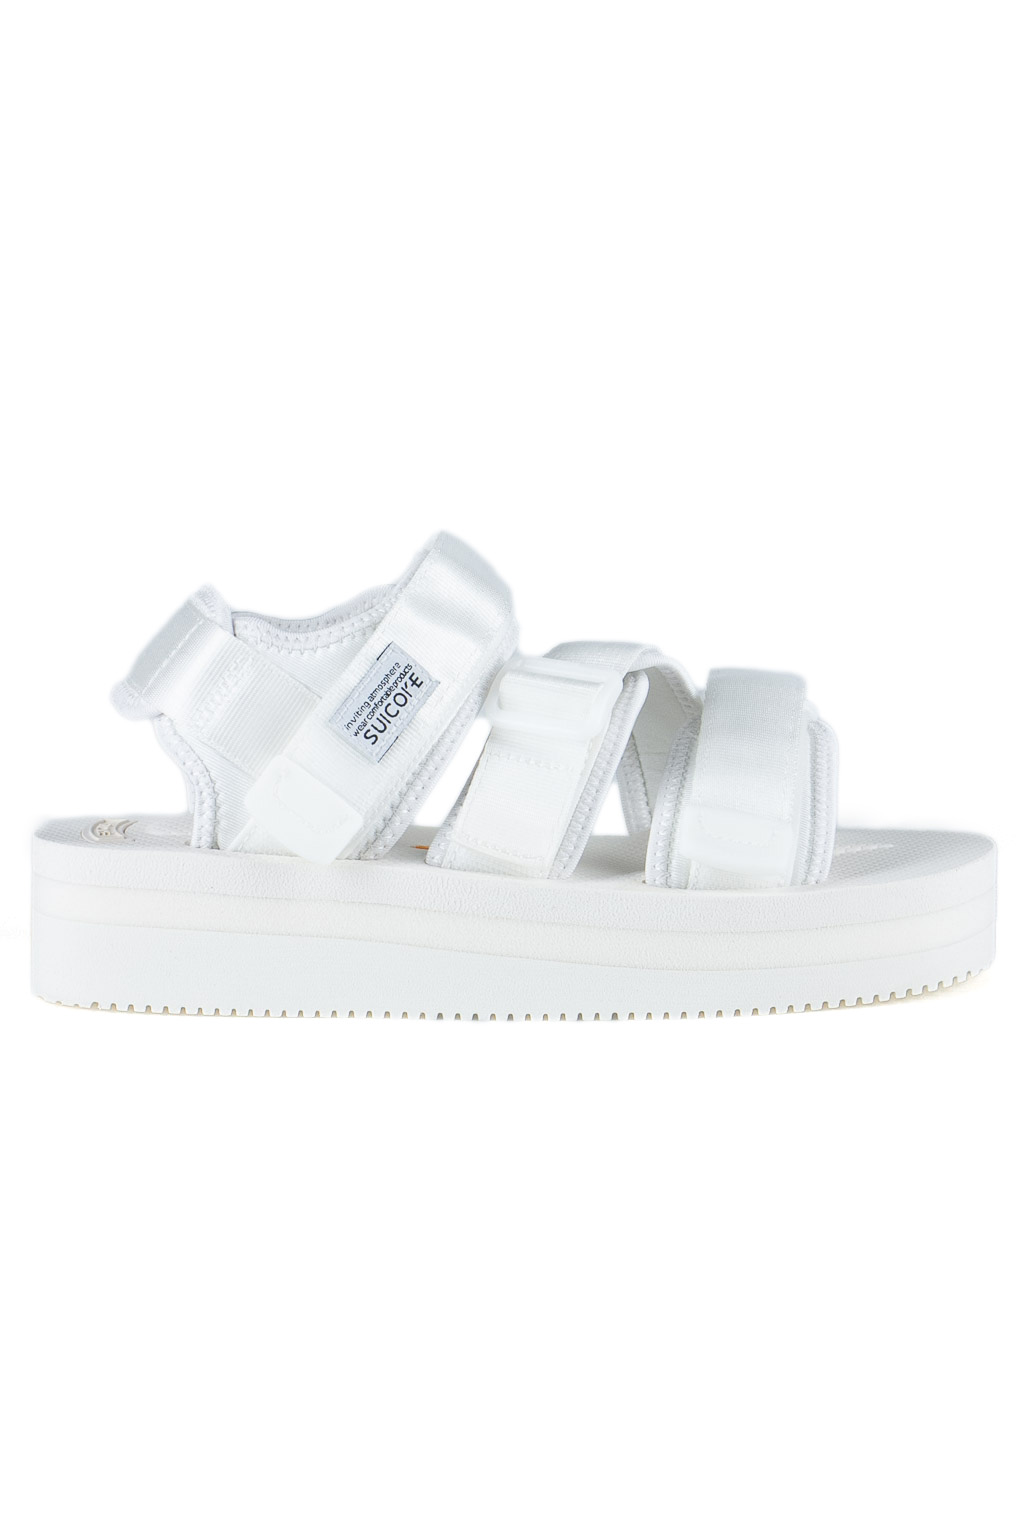 suicoke sandals white